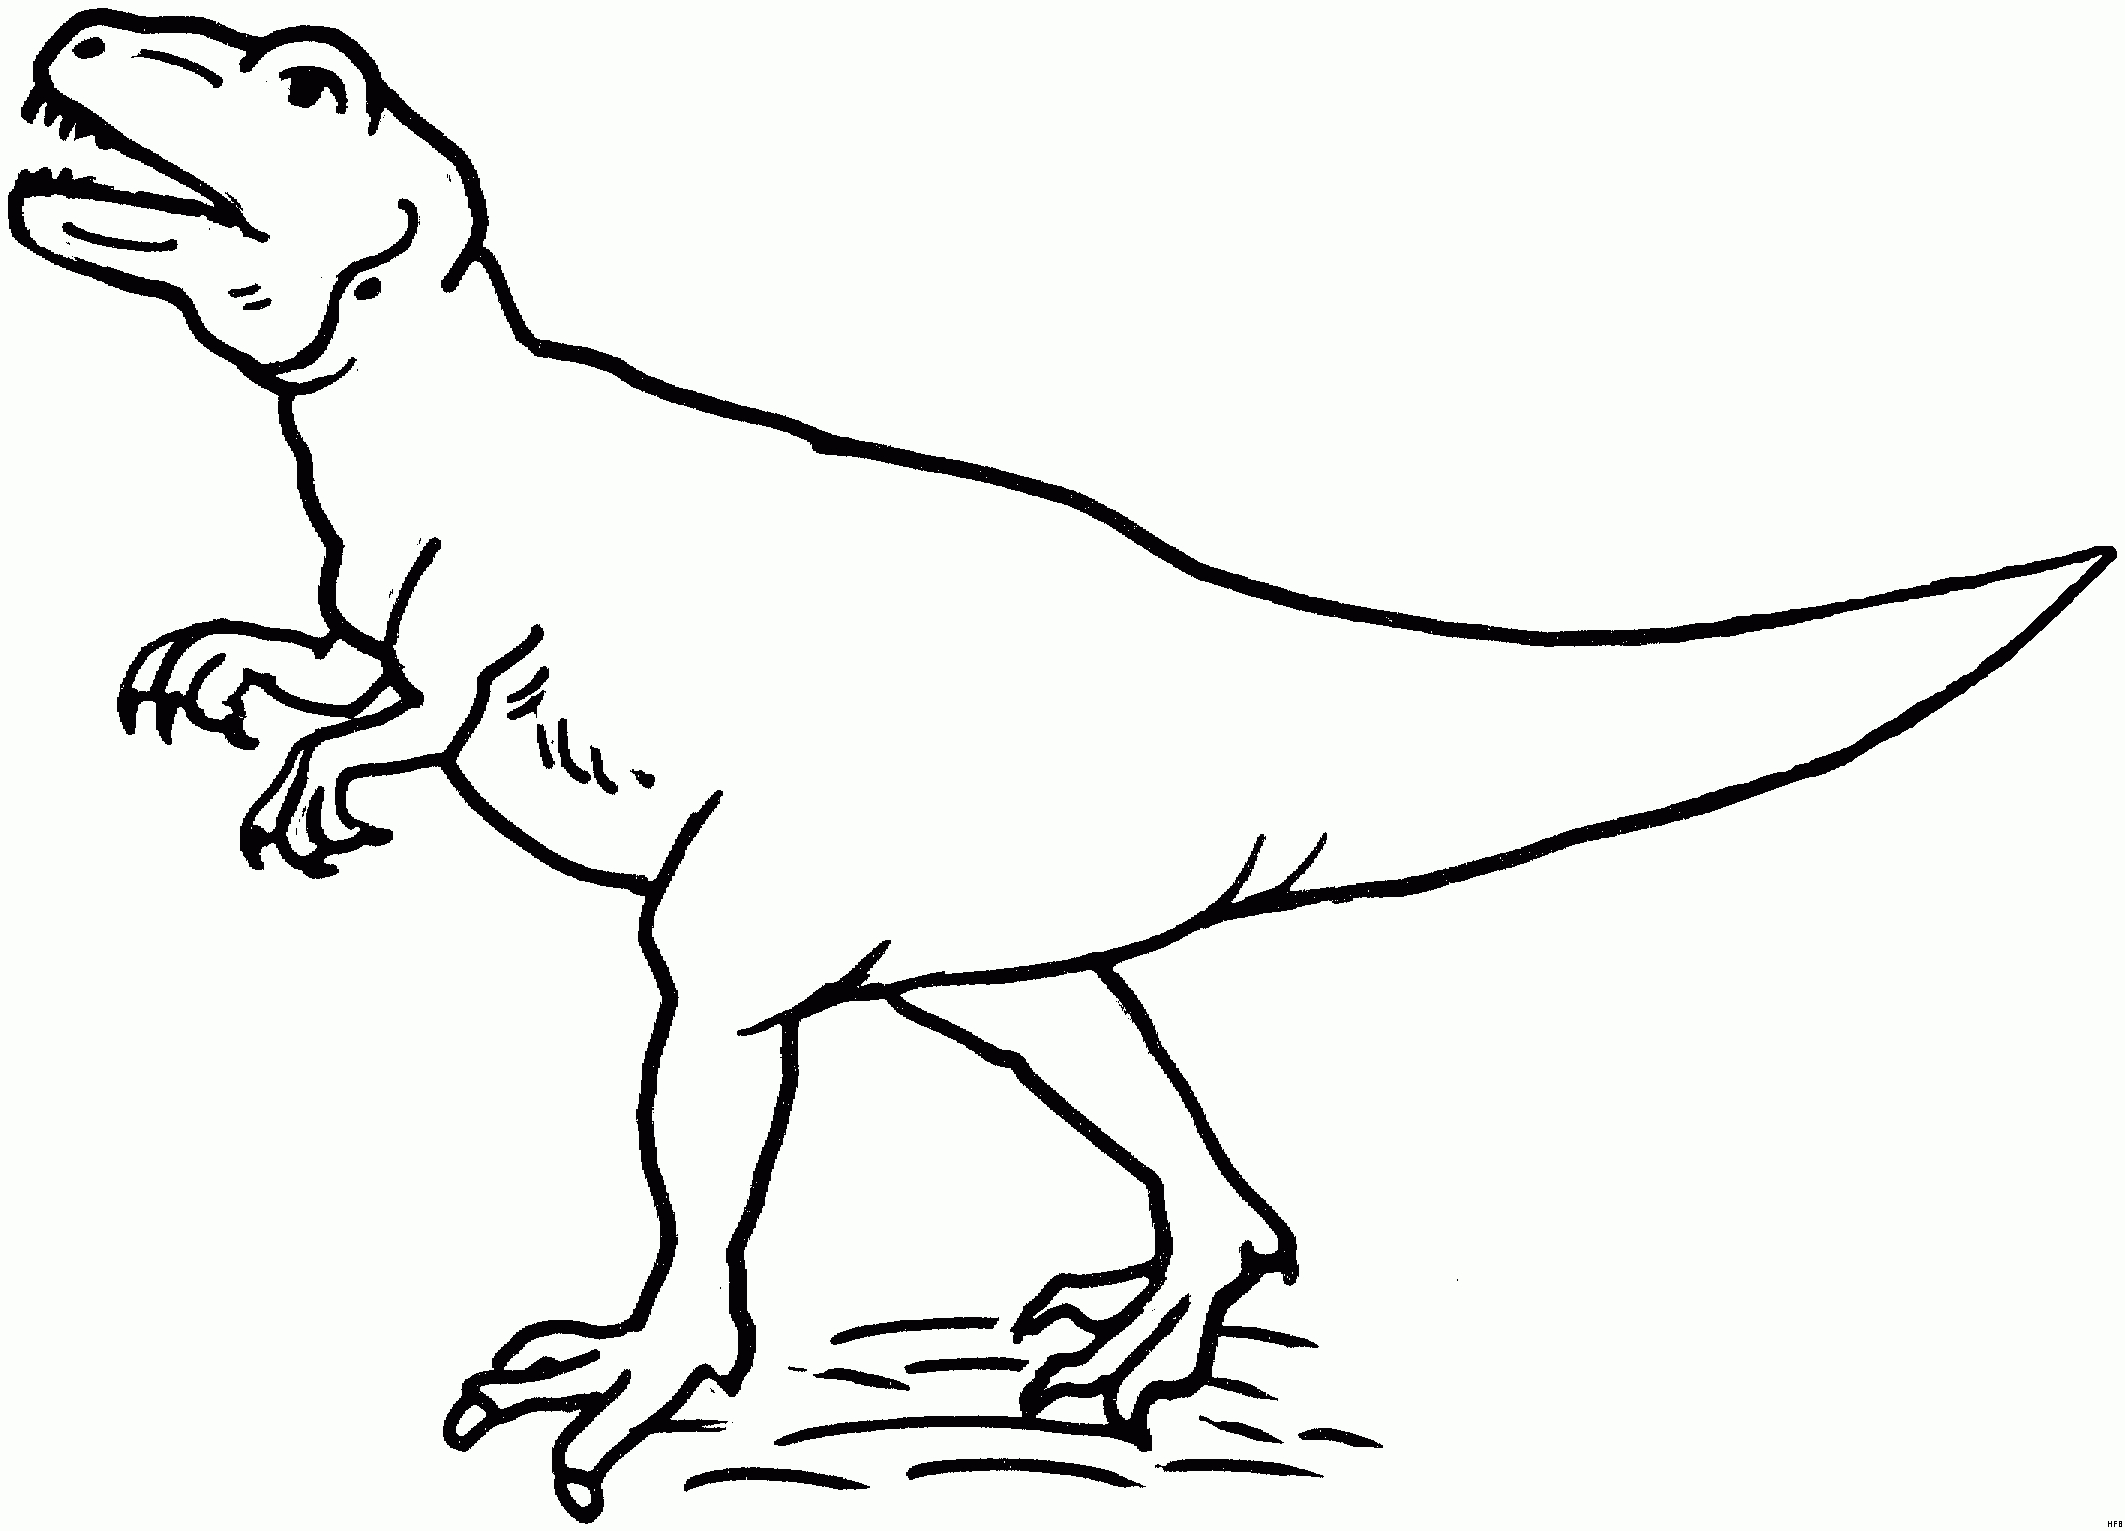 T Rex Ausmalbild - Ausmalbilder Für Kinder | Malvorlage ganzes Dinosaurier Bilder Kinder